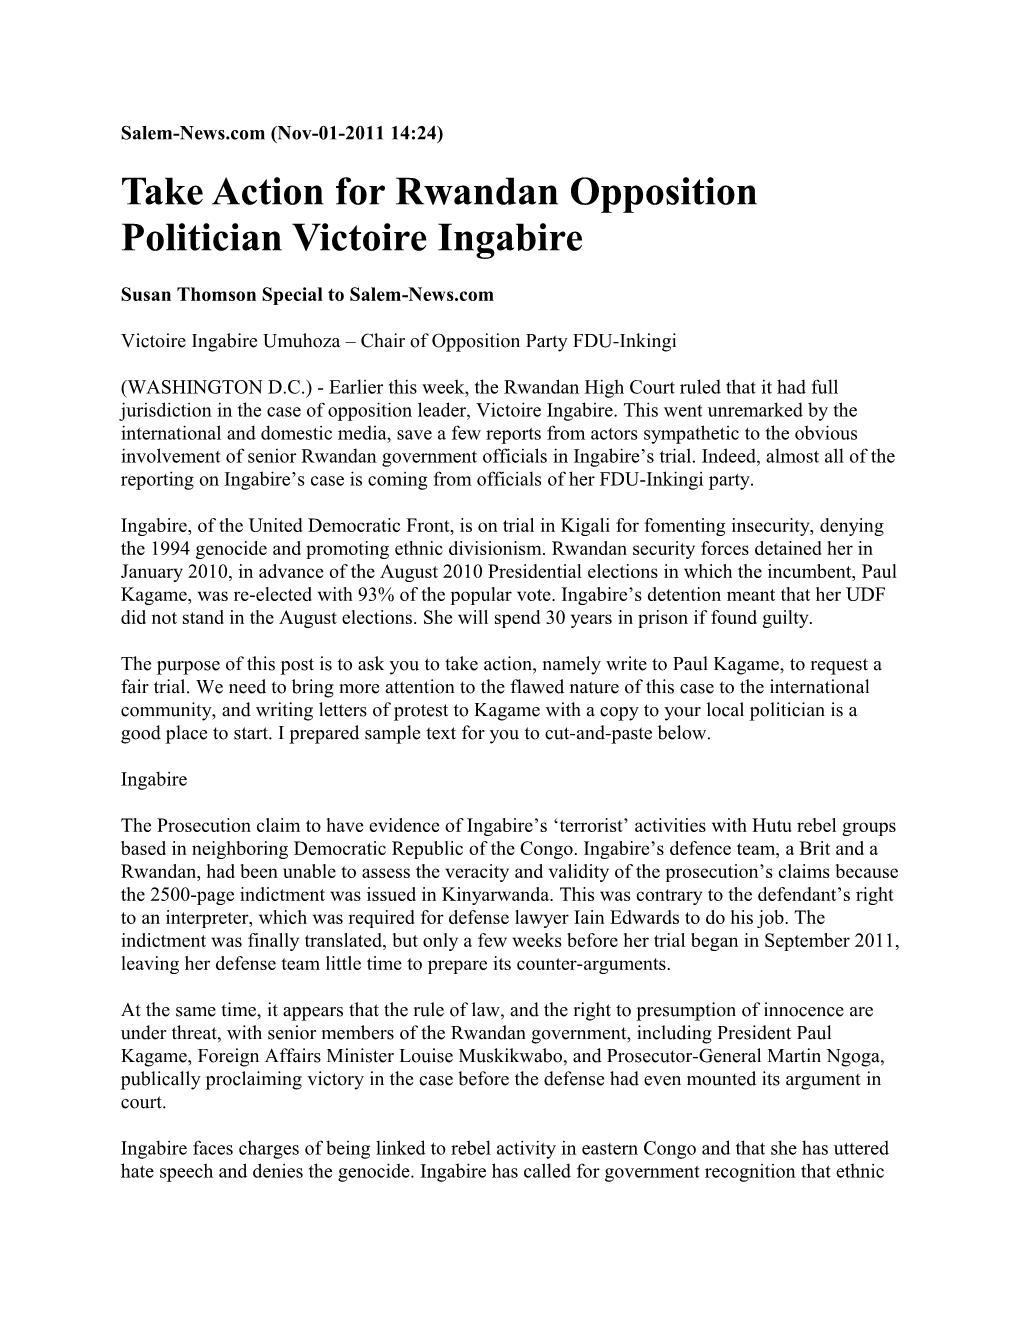 Take Action for Rwandan Opposition Politician Victoire Ingabire